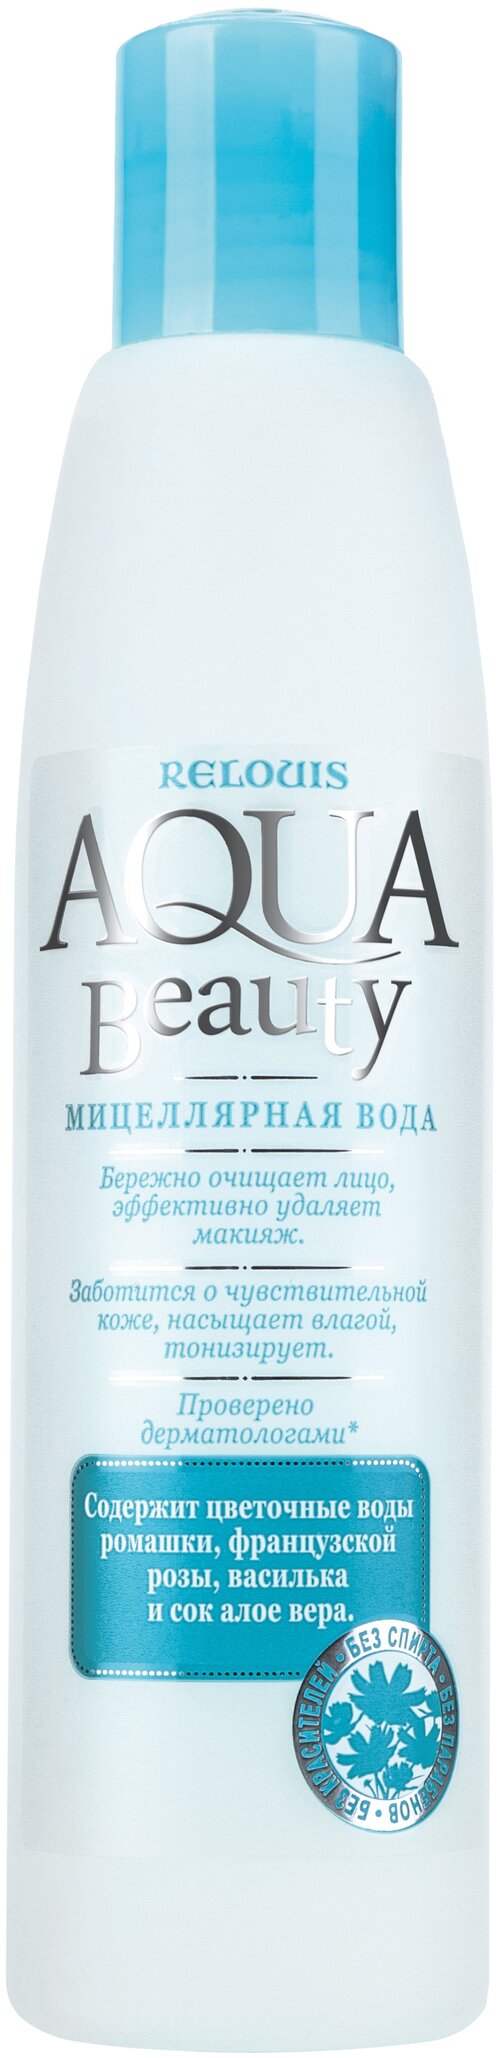 Relouis мицеллярная вода Aqua Beauty, 200 мл, 200 г